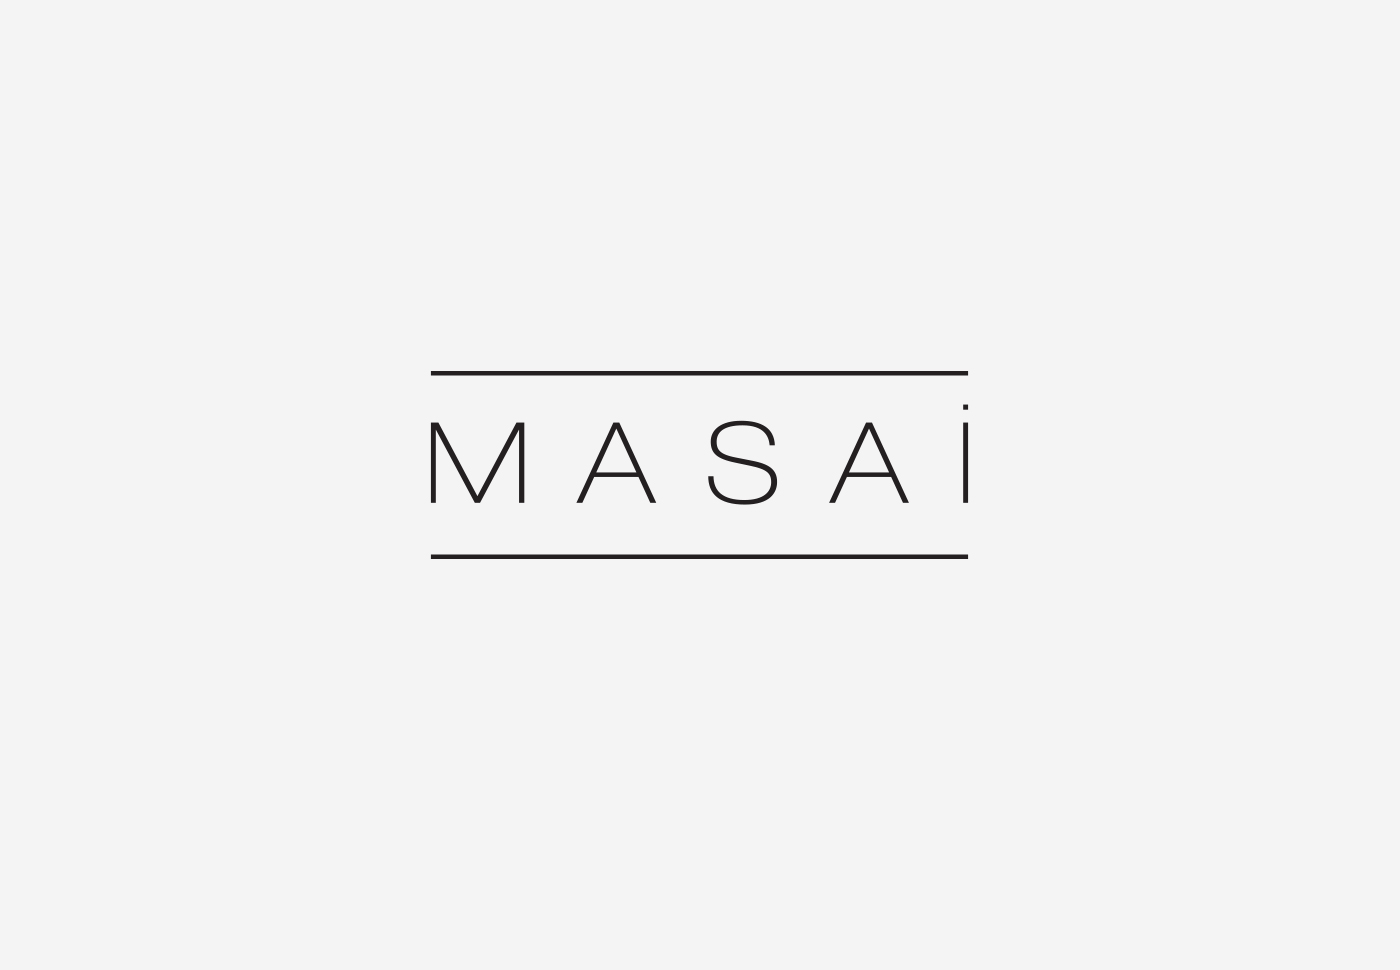 Masai – Logo redesign 2016